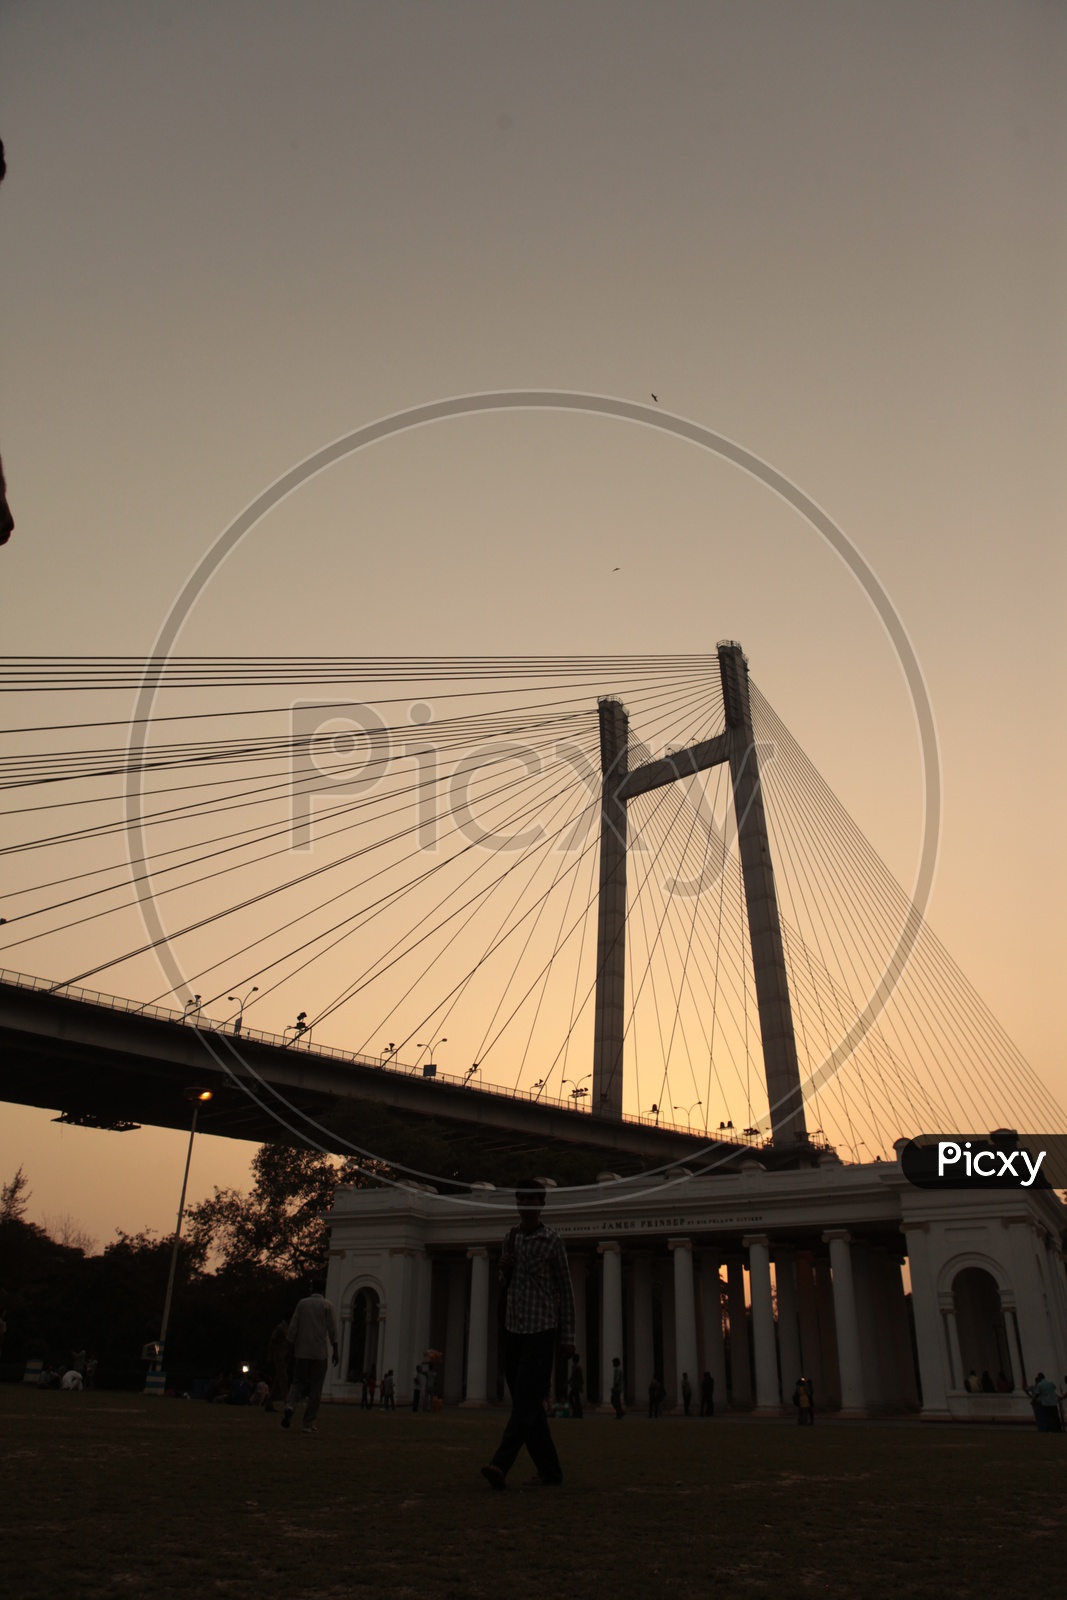 Evening view at James Prinsep memorial ghat over looking Vidyasagar Setu bridge in Kolkata